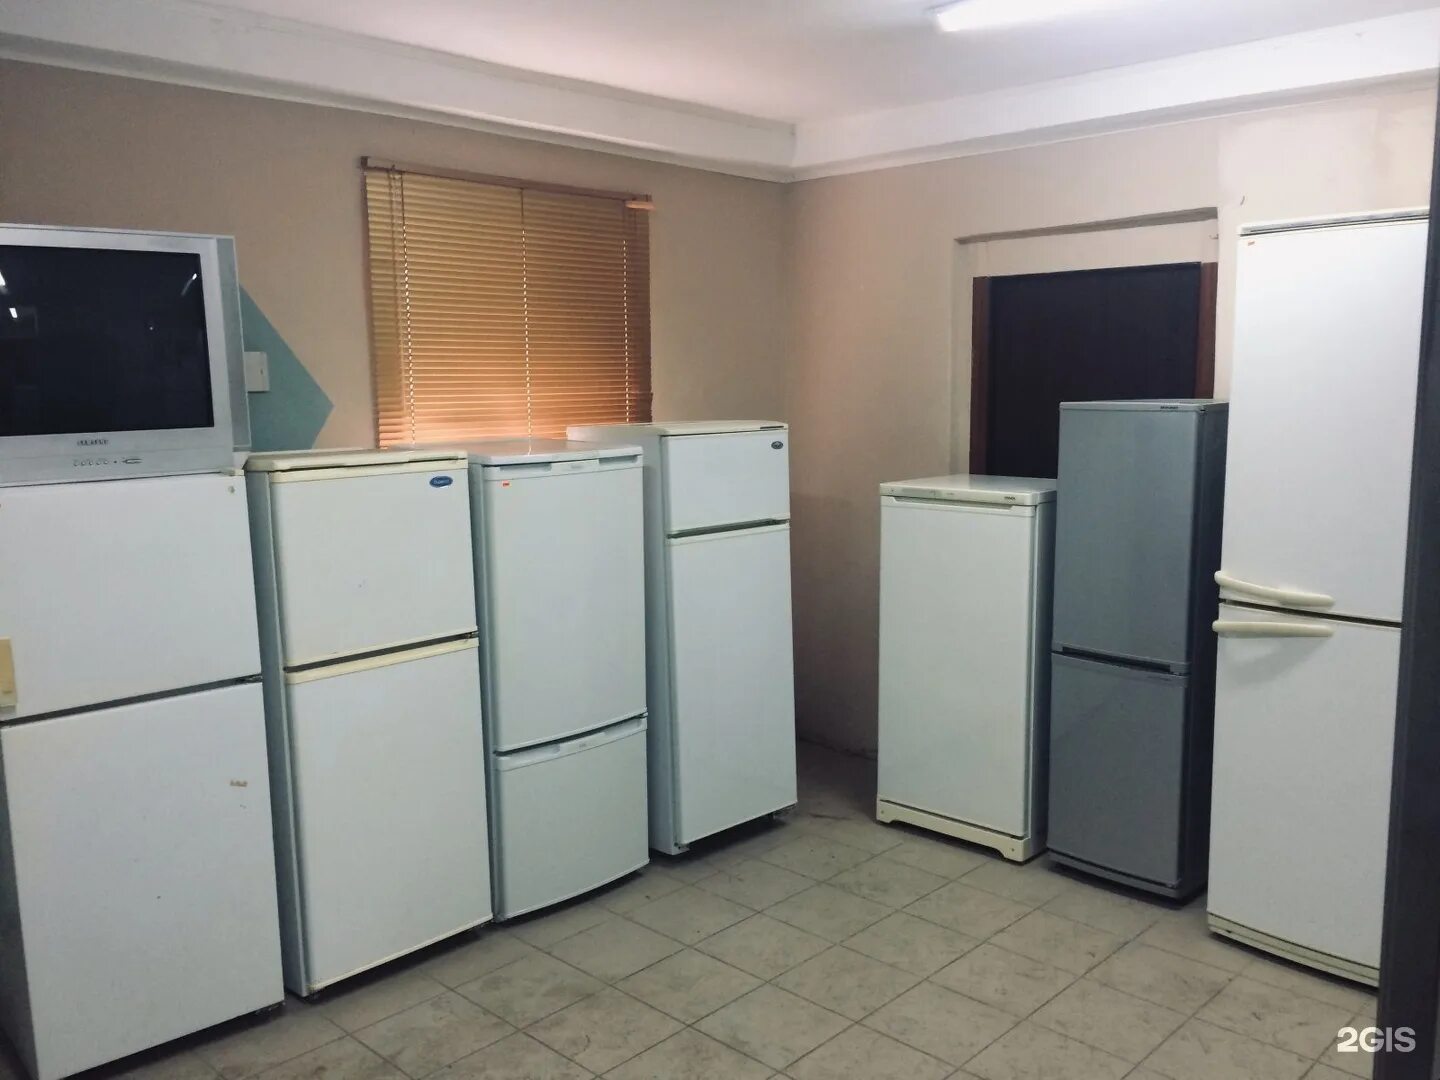 Холодильник б/у. Много холодильников б/у. Холодильник в Алматы. Купить холодильник бу на Отрадном. Холодильники б у ростов